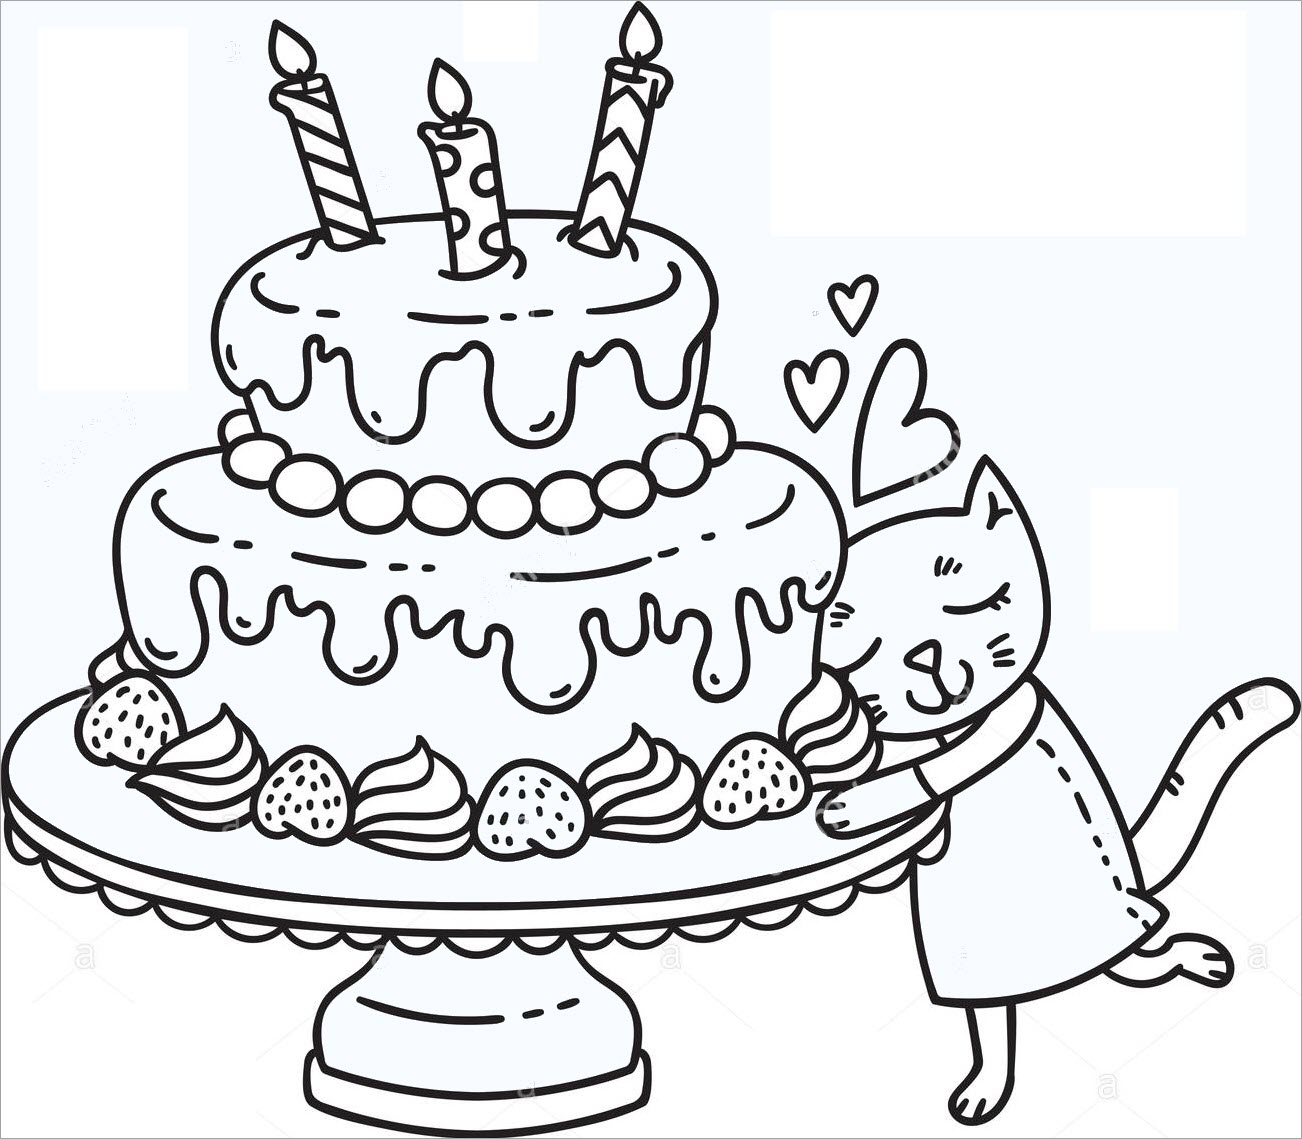 Tổng hợp tranh tô màu bánh sinh nhật cho bé yêu sáng tạo